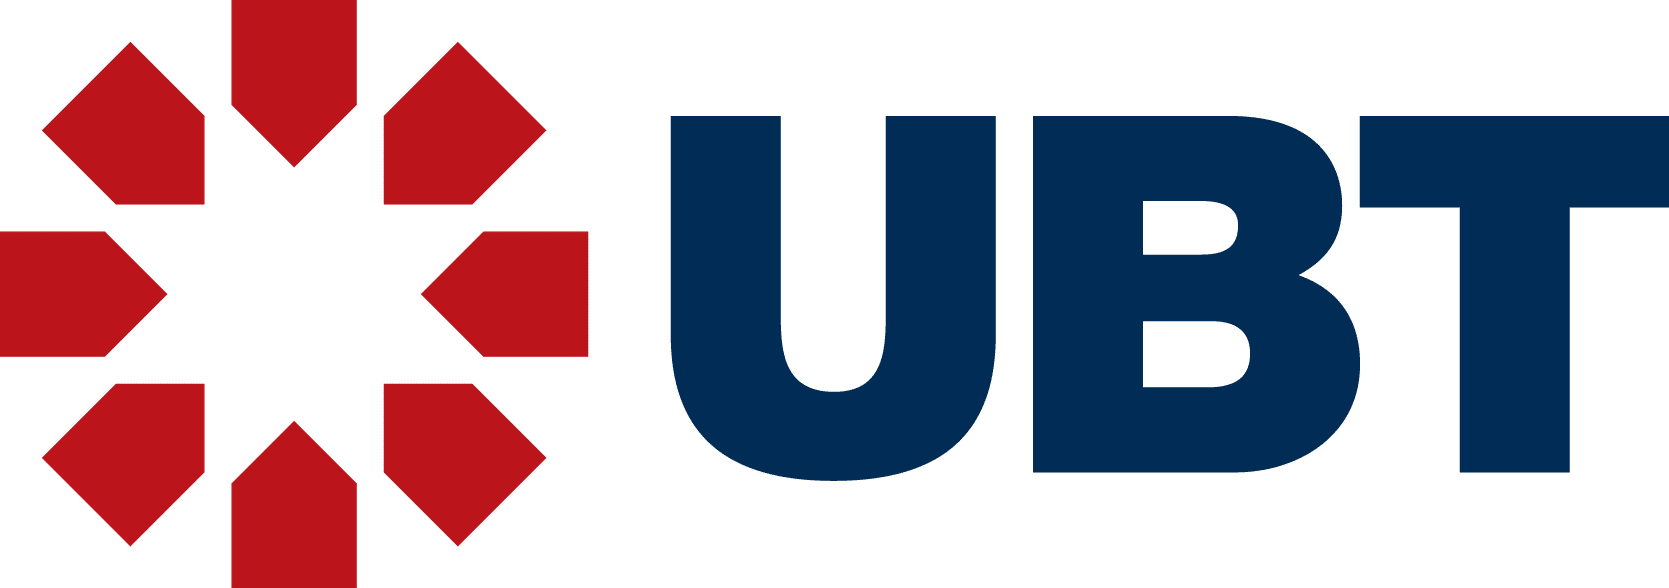 ubt logo rgb